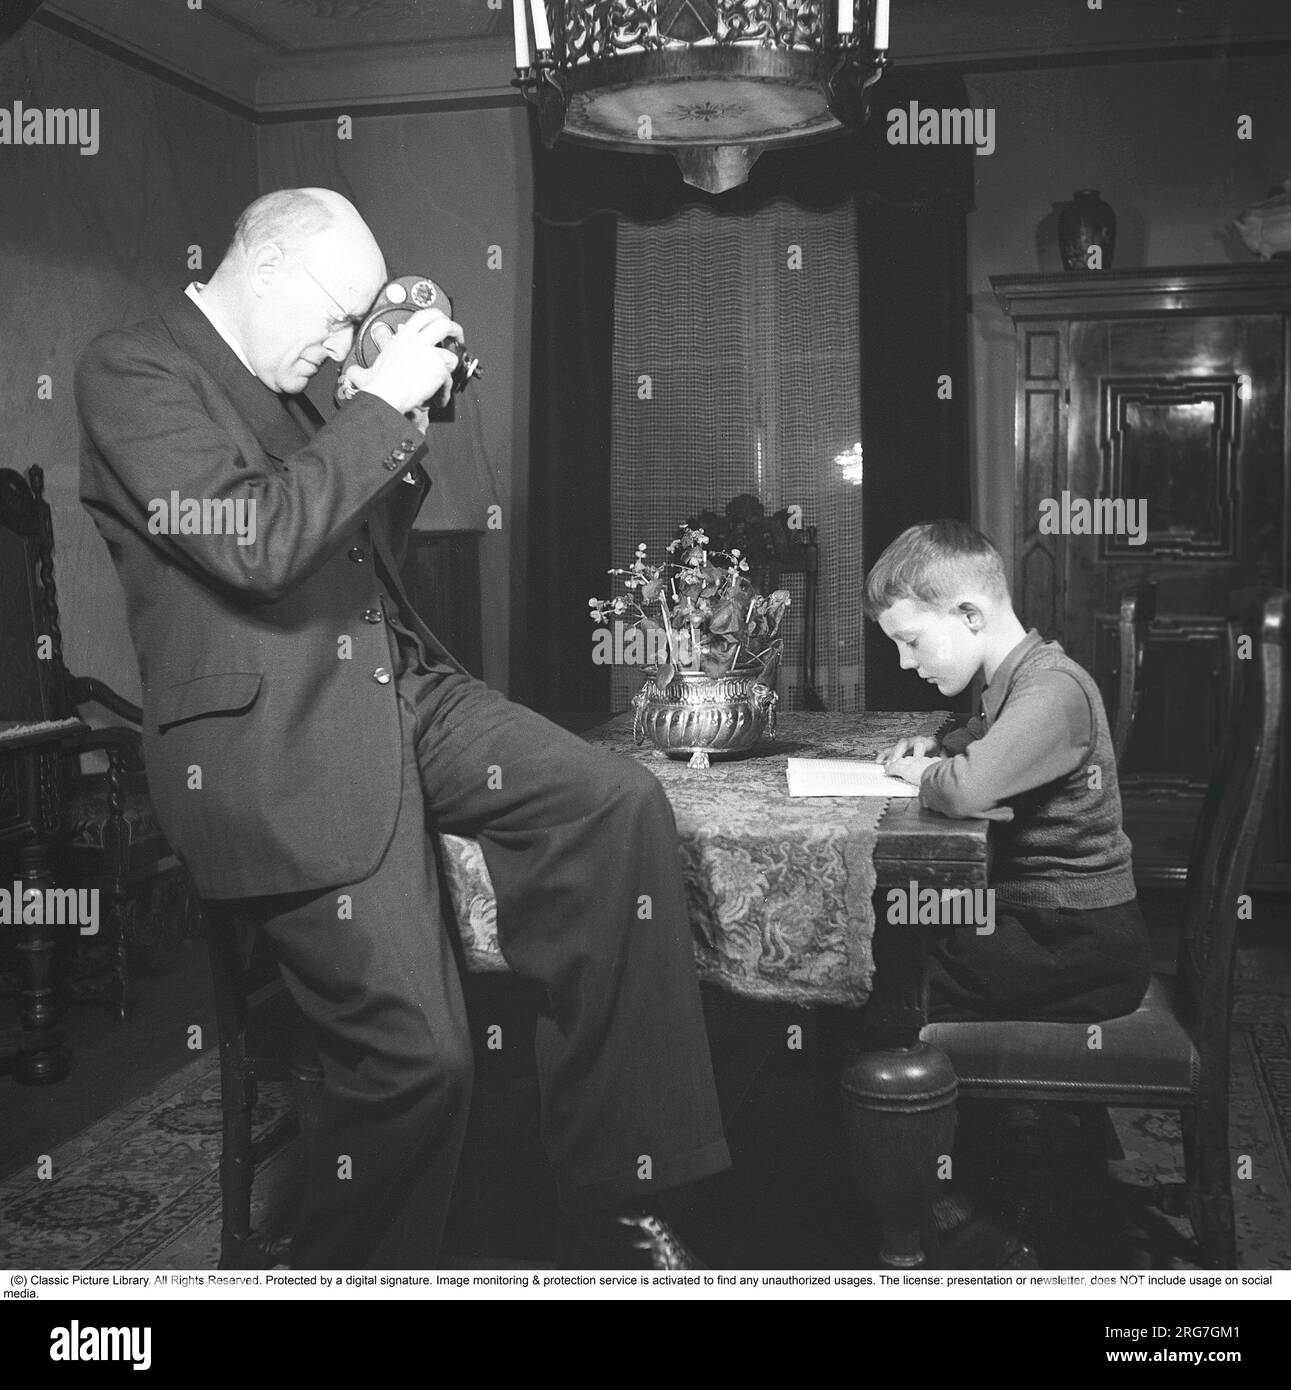 Dans les années 1940 Un homme filme avec une caméra amateur. Le film a ensuite été développé et montré sur un projecteur de film sur un écran pliant à la maison. Le film n'avait aucun son. Les caméras ne fonctionnaient pas sur piles et il fallait les remonter comme une horloge pour les faire fonctionner. Il se concentre sur son fils qui est assis à une table de lecture. Suède 1943. Kristoffersson réf. B103-1 Banque D'Images